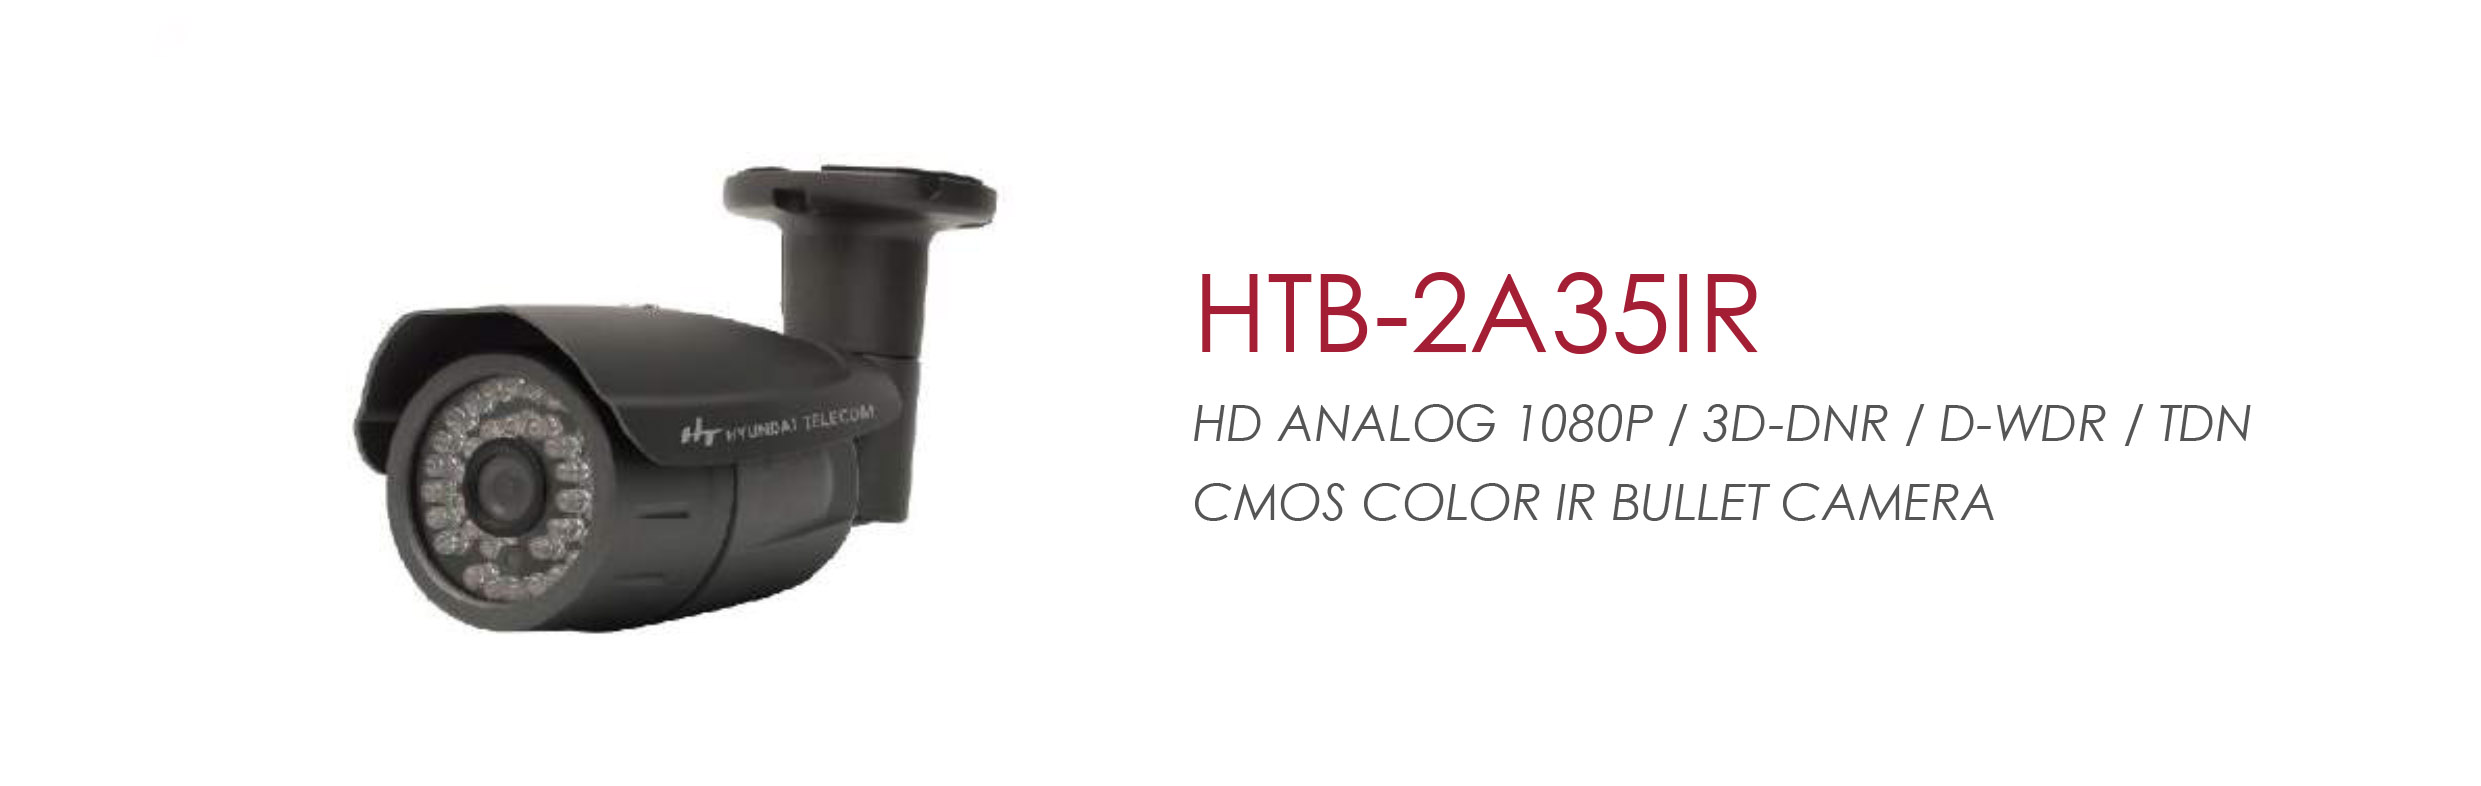 HTB-2A35IR